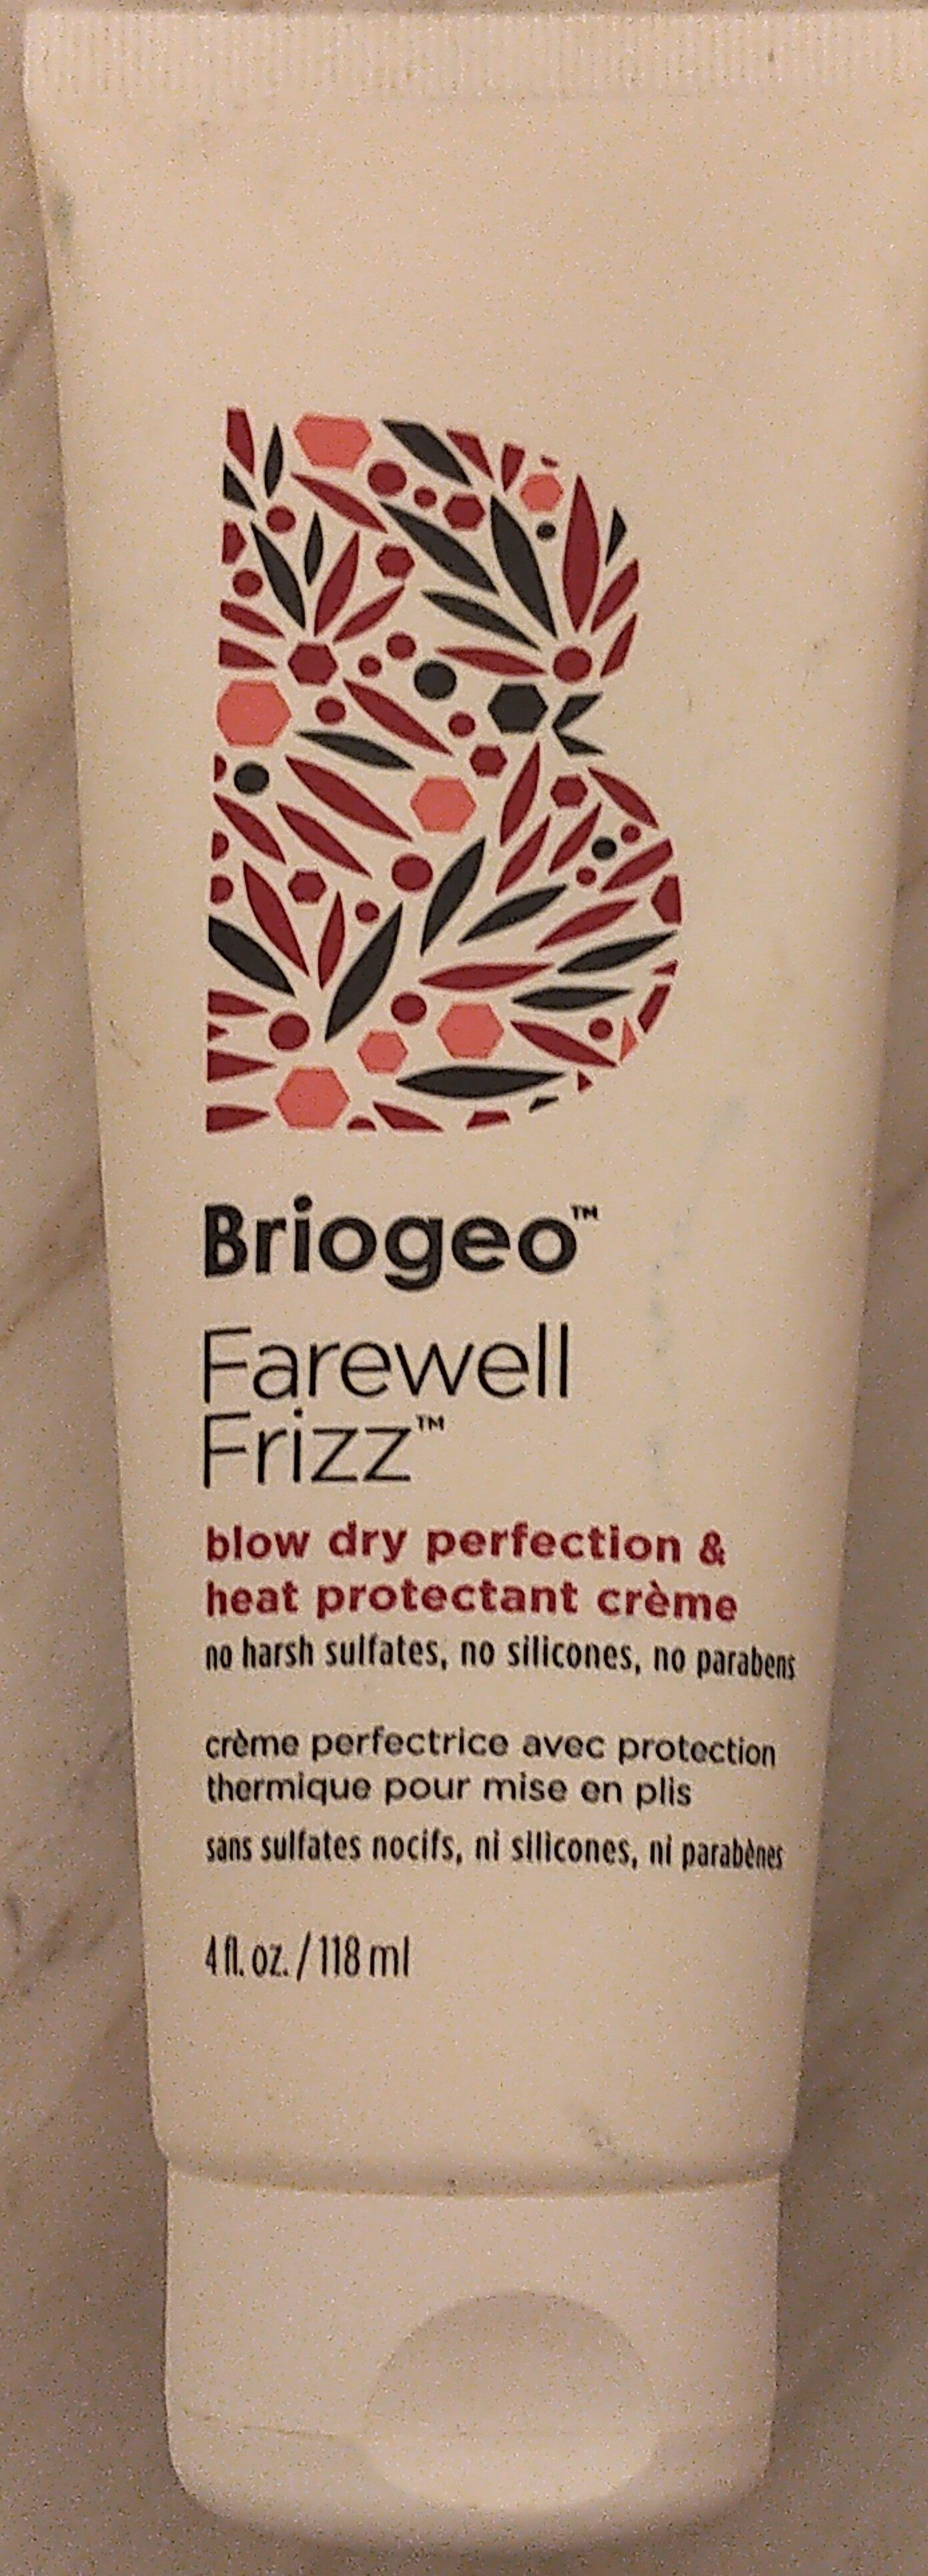 Briogeo Farewell Frizz Blow Dry Perfection & Heat Protectant Crème - Produktas - en